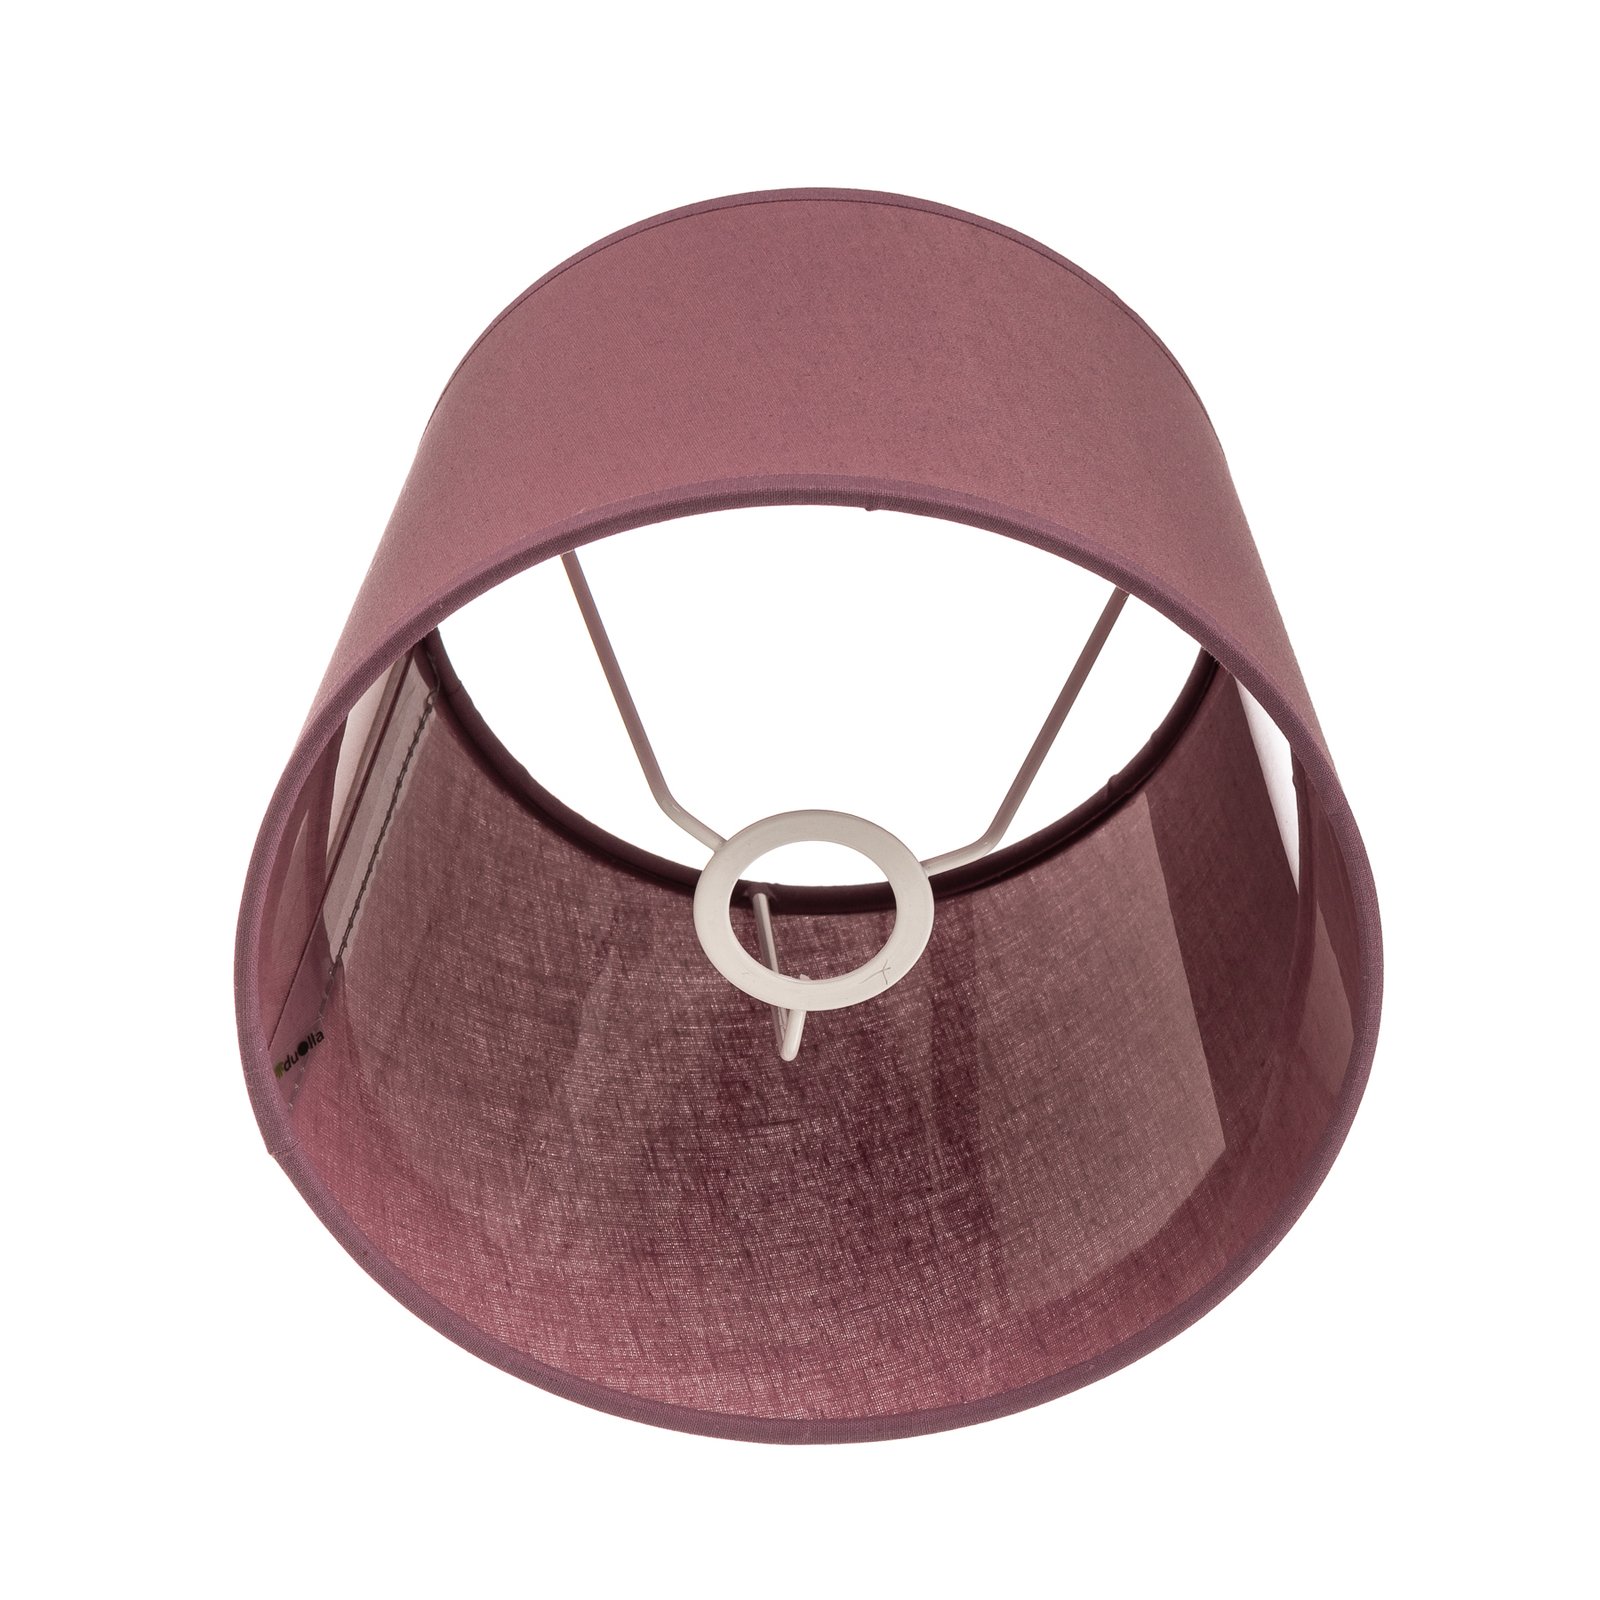 Classic S lampshade, retro pink